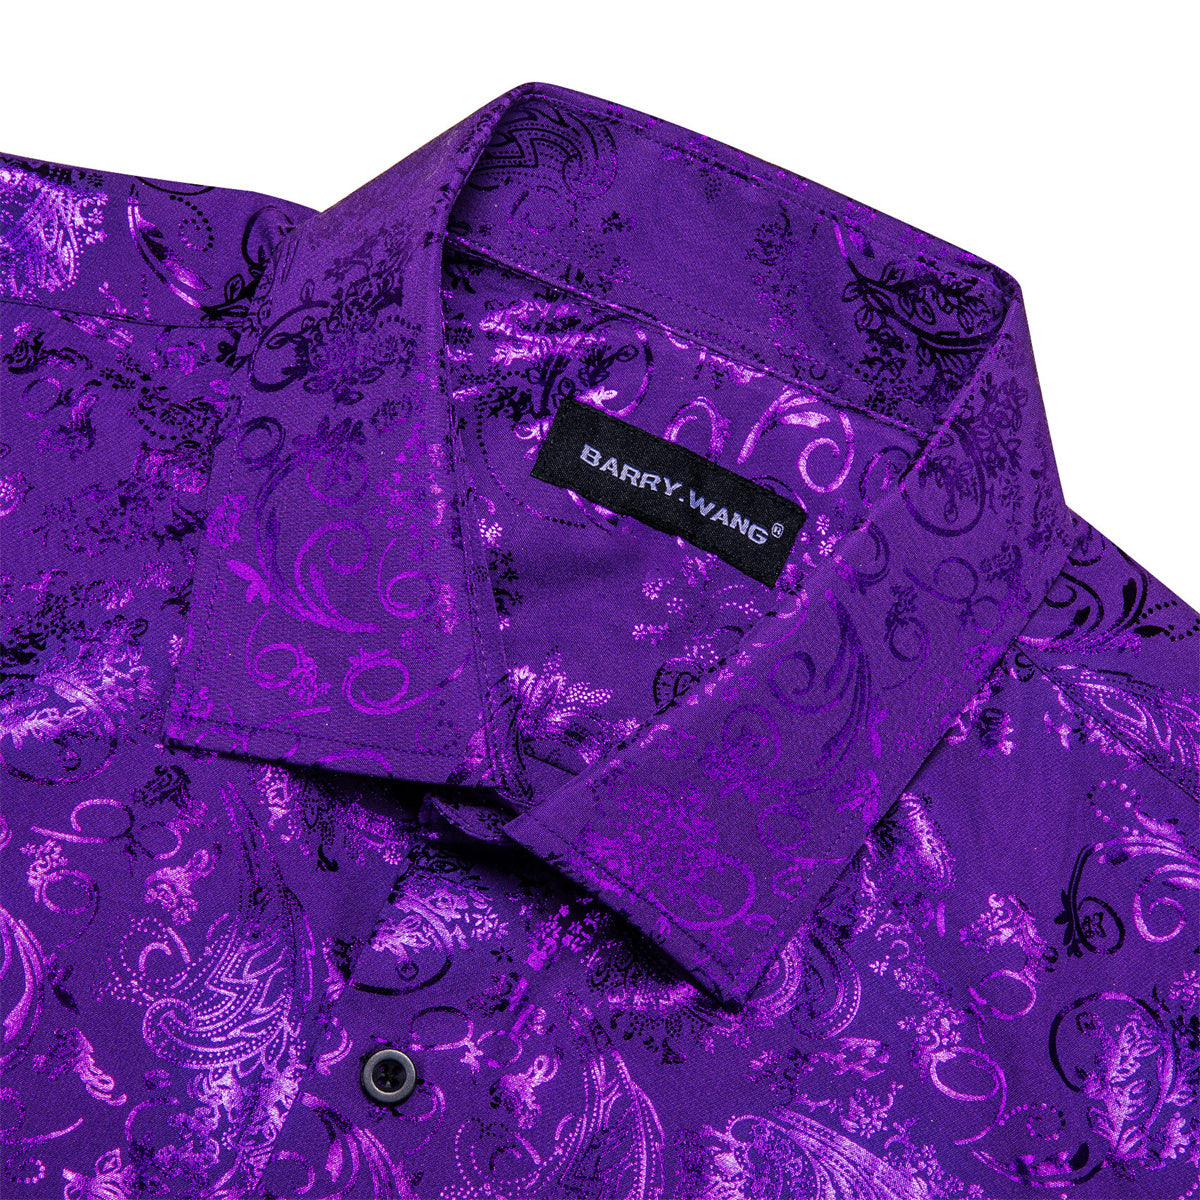 Barry.wang Button Down Shirt Violet Purple Bronzing Floral Silk Men's Long Sleeve Shirt